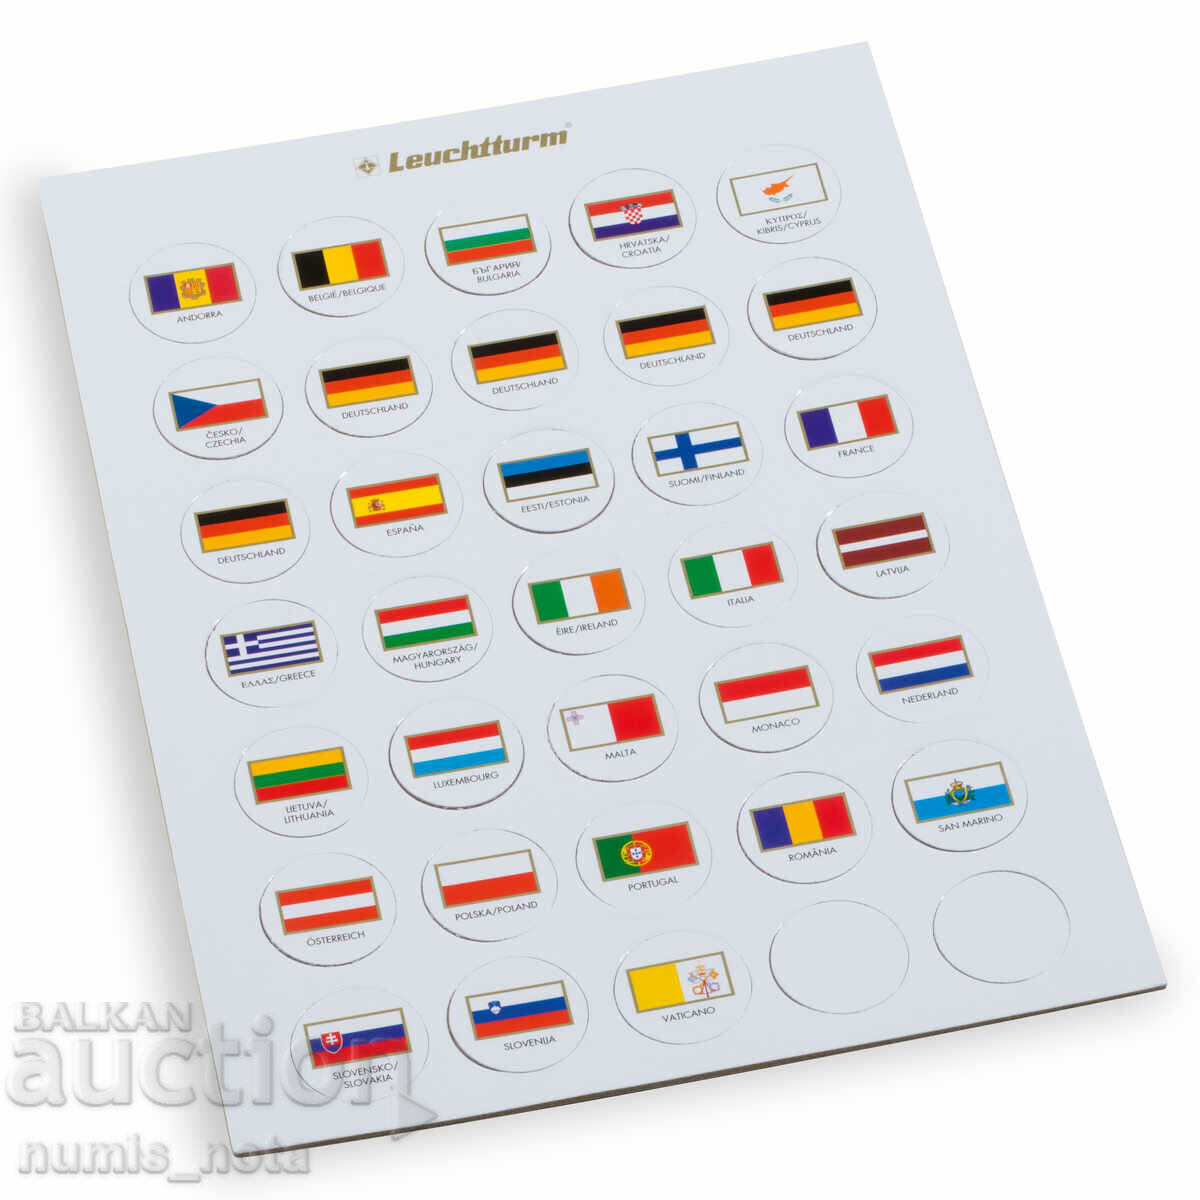 jetoane cu steaguri diferite pentru euroseturi cu monede - 35 de piese